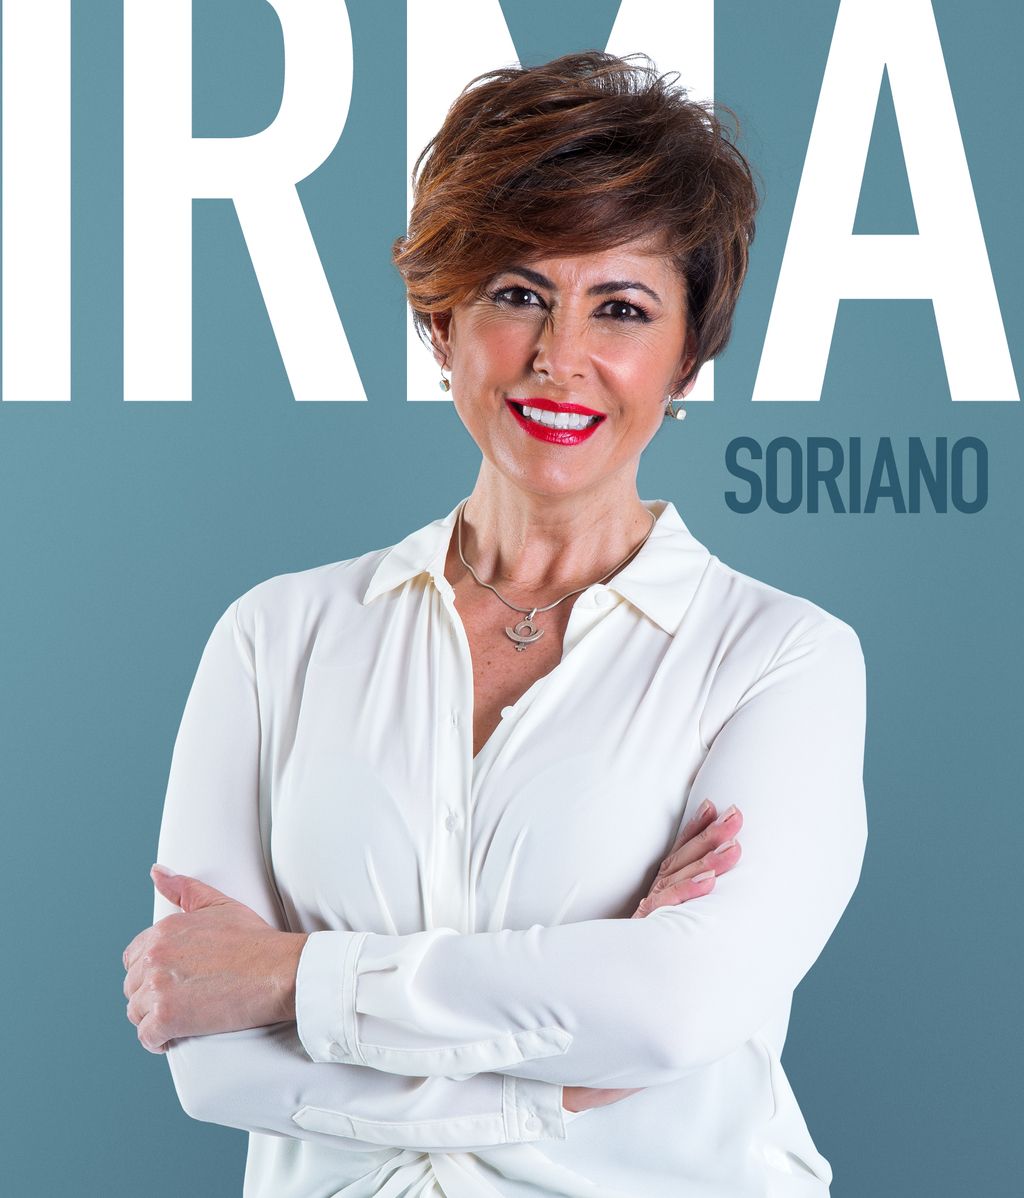 Irma Soriano, 53 años